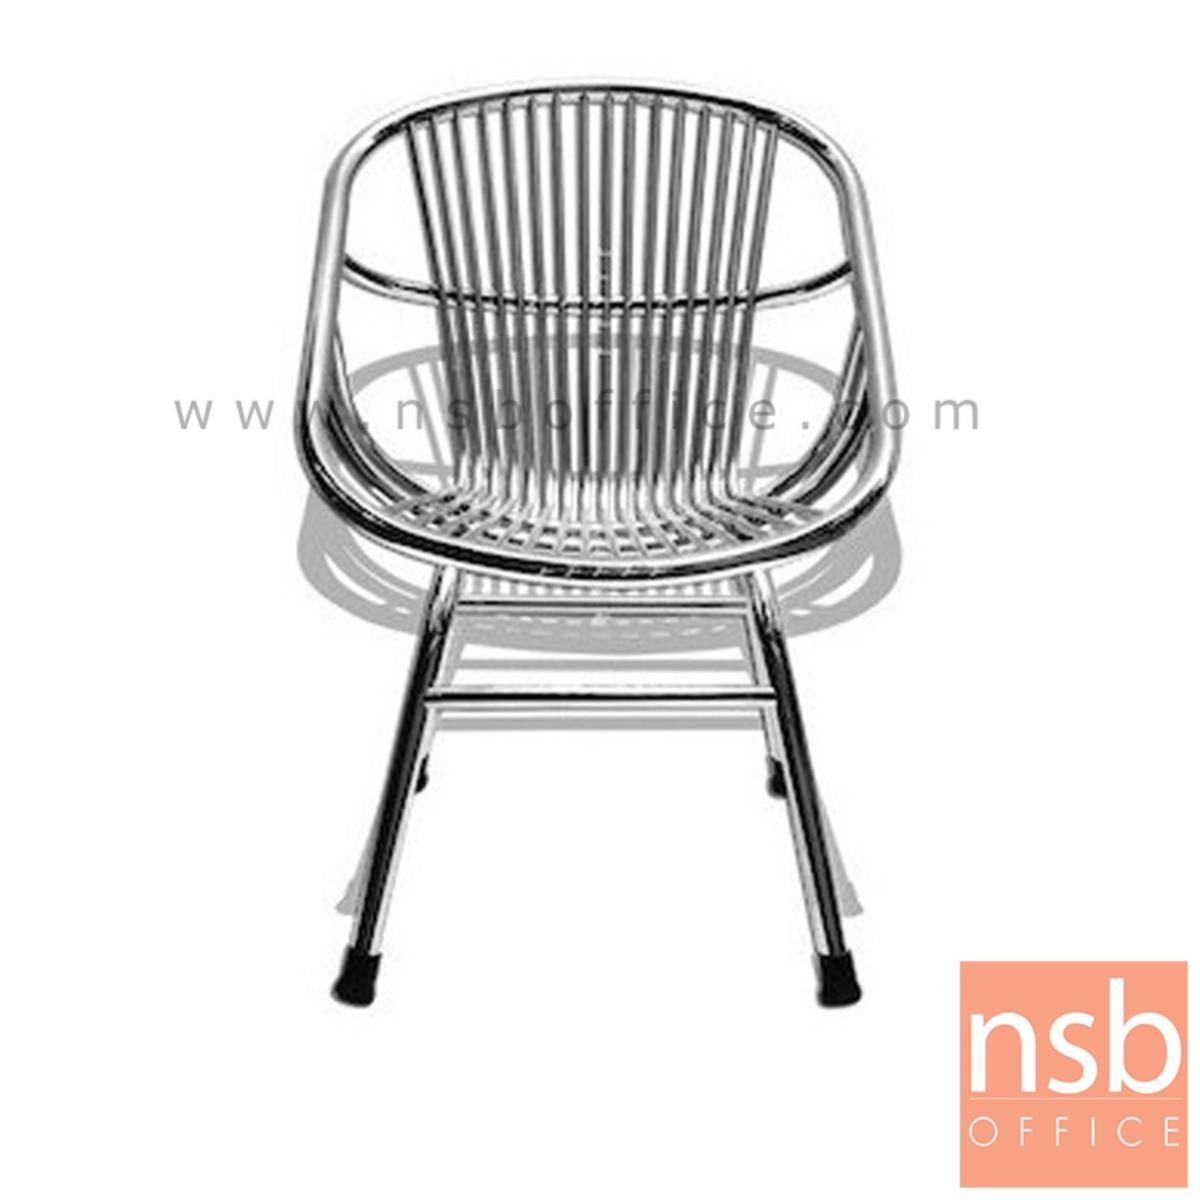 G12A270:เก้าอี้สแตนเลสล้วน รุ่น Ninette (นิลเนตร) ทรงโค้ง 